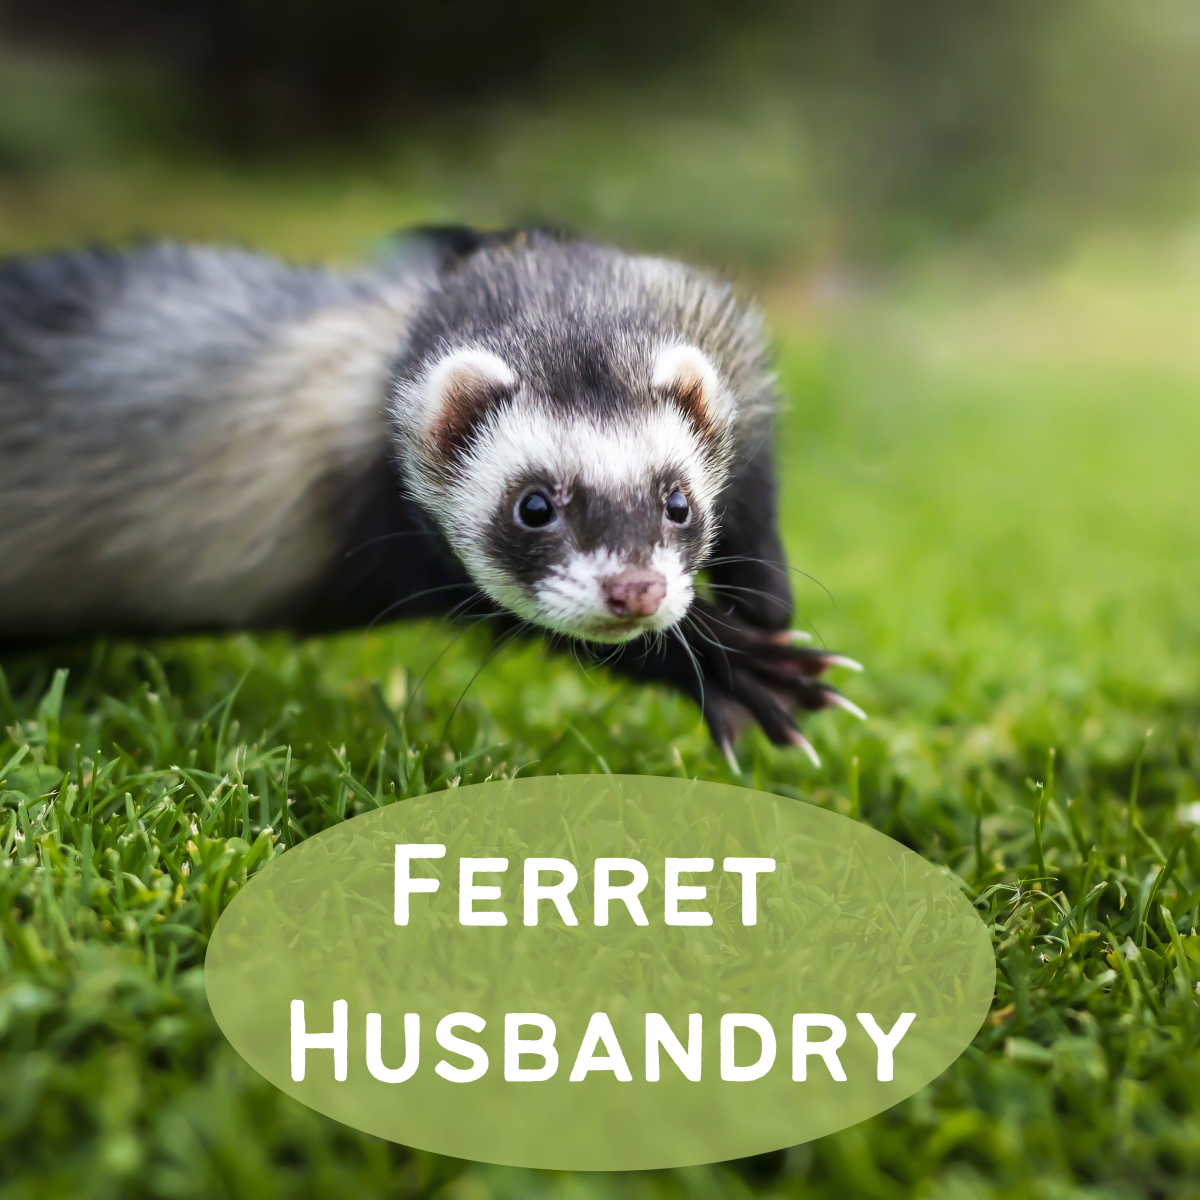 Ferret Husbandry 101: Behavior, Diet, and Medical Care